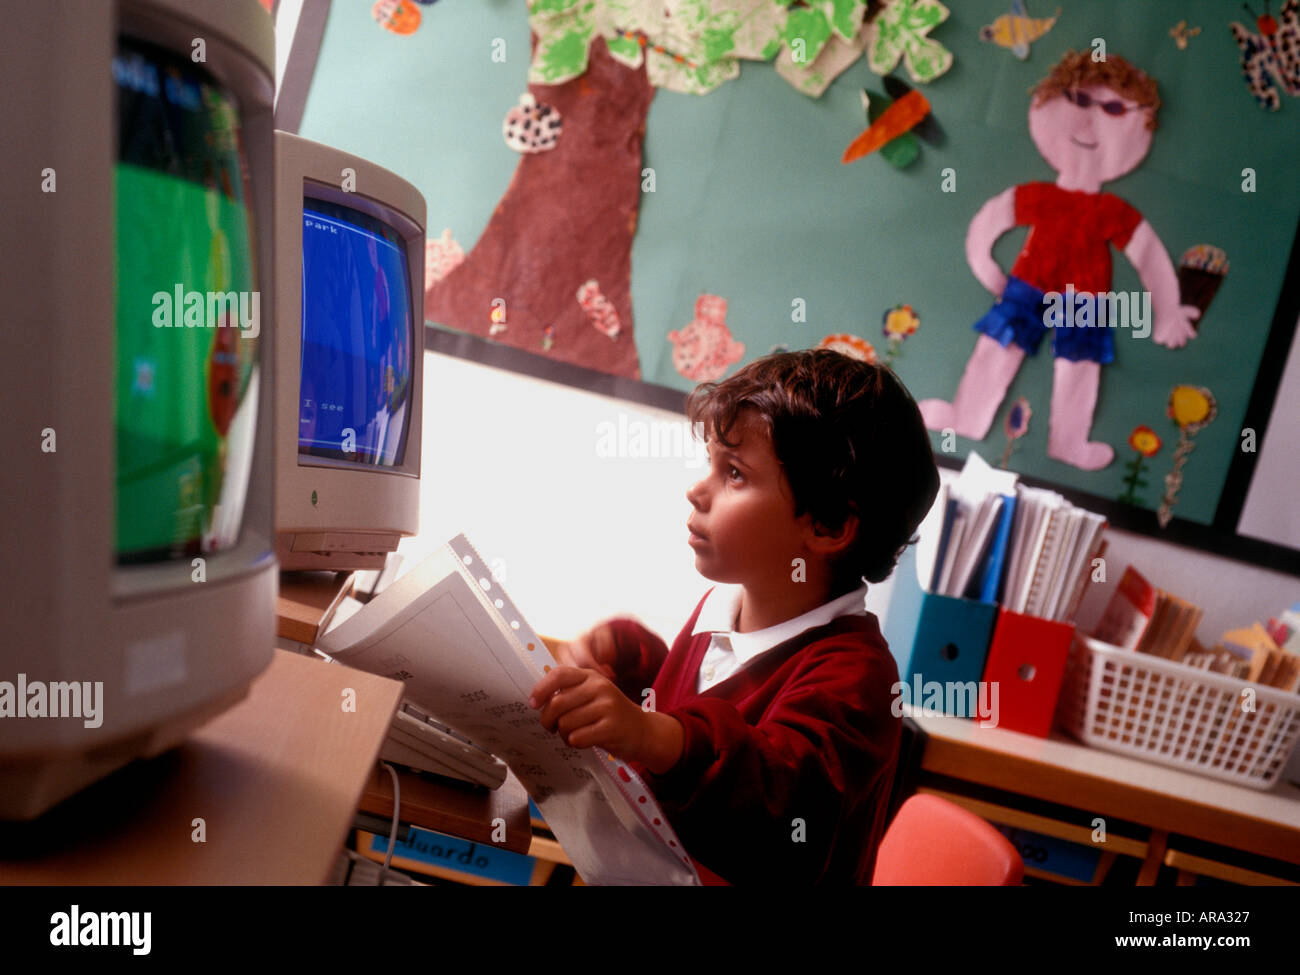 Computer-Bildschirm der 1990er Jahre Kleinkind Schuljunge im Alter von 3 bis 5 Jahren auf dem Computer-Bildschirm mit Kunstwerken im Hintergrund frühen Kleinkind Computerunterricht in den 1990er Jahren Stockfoto